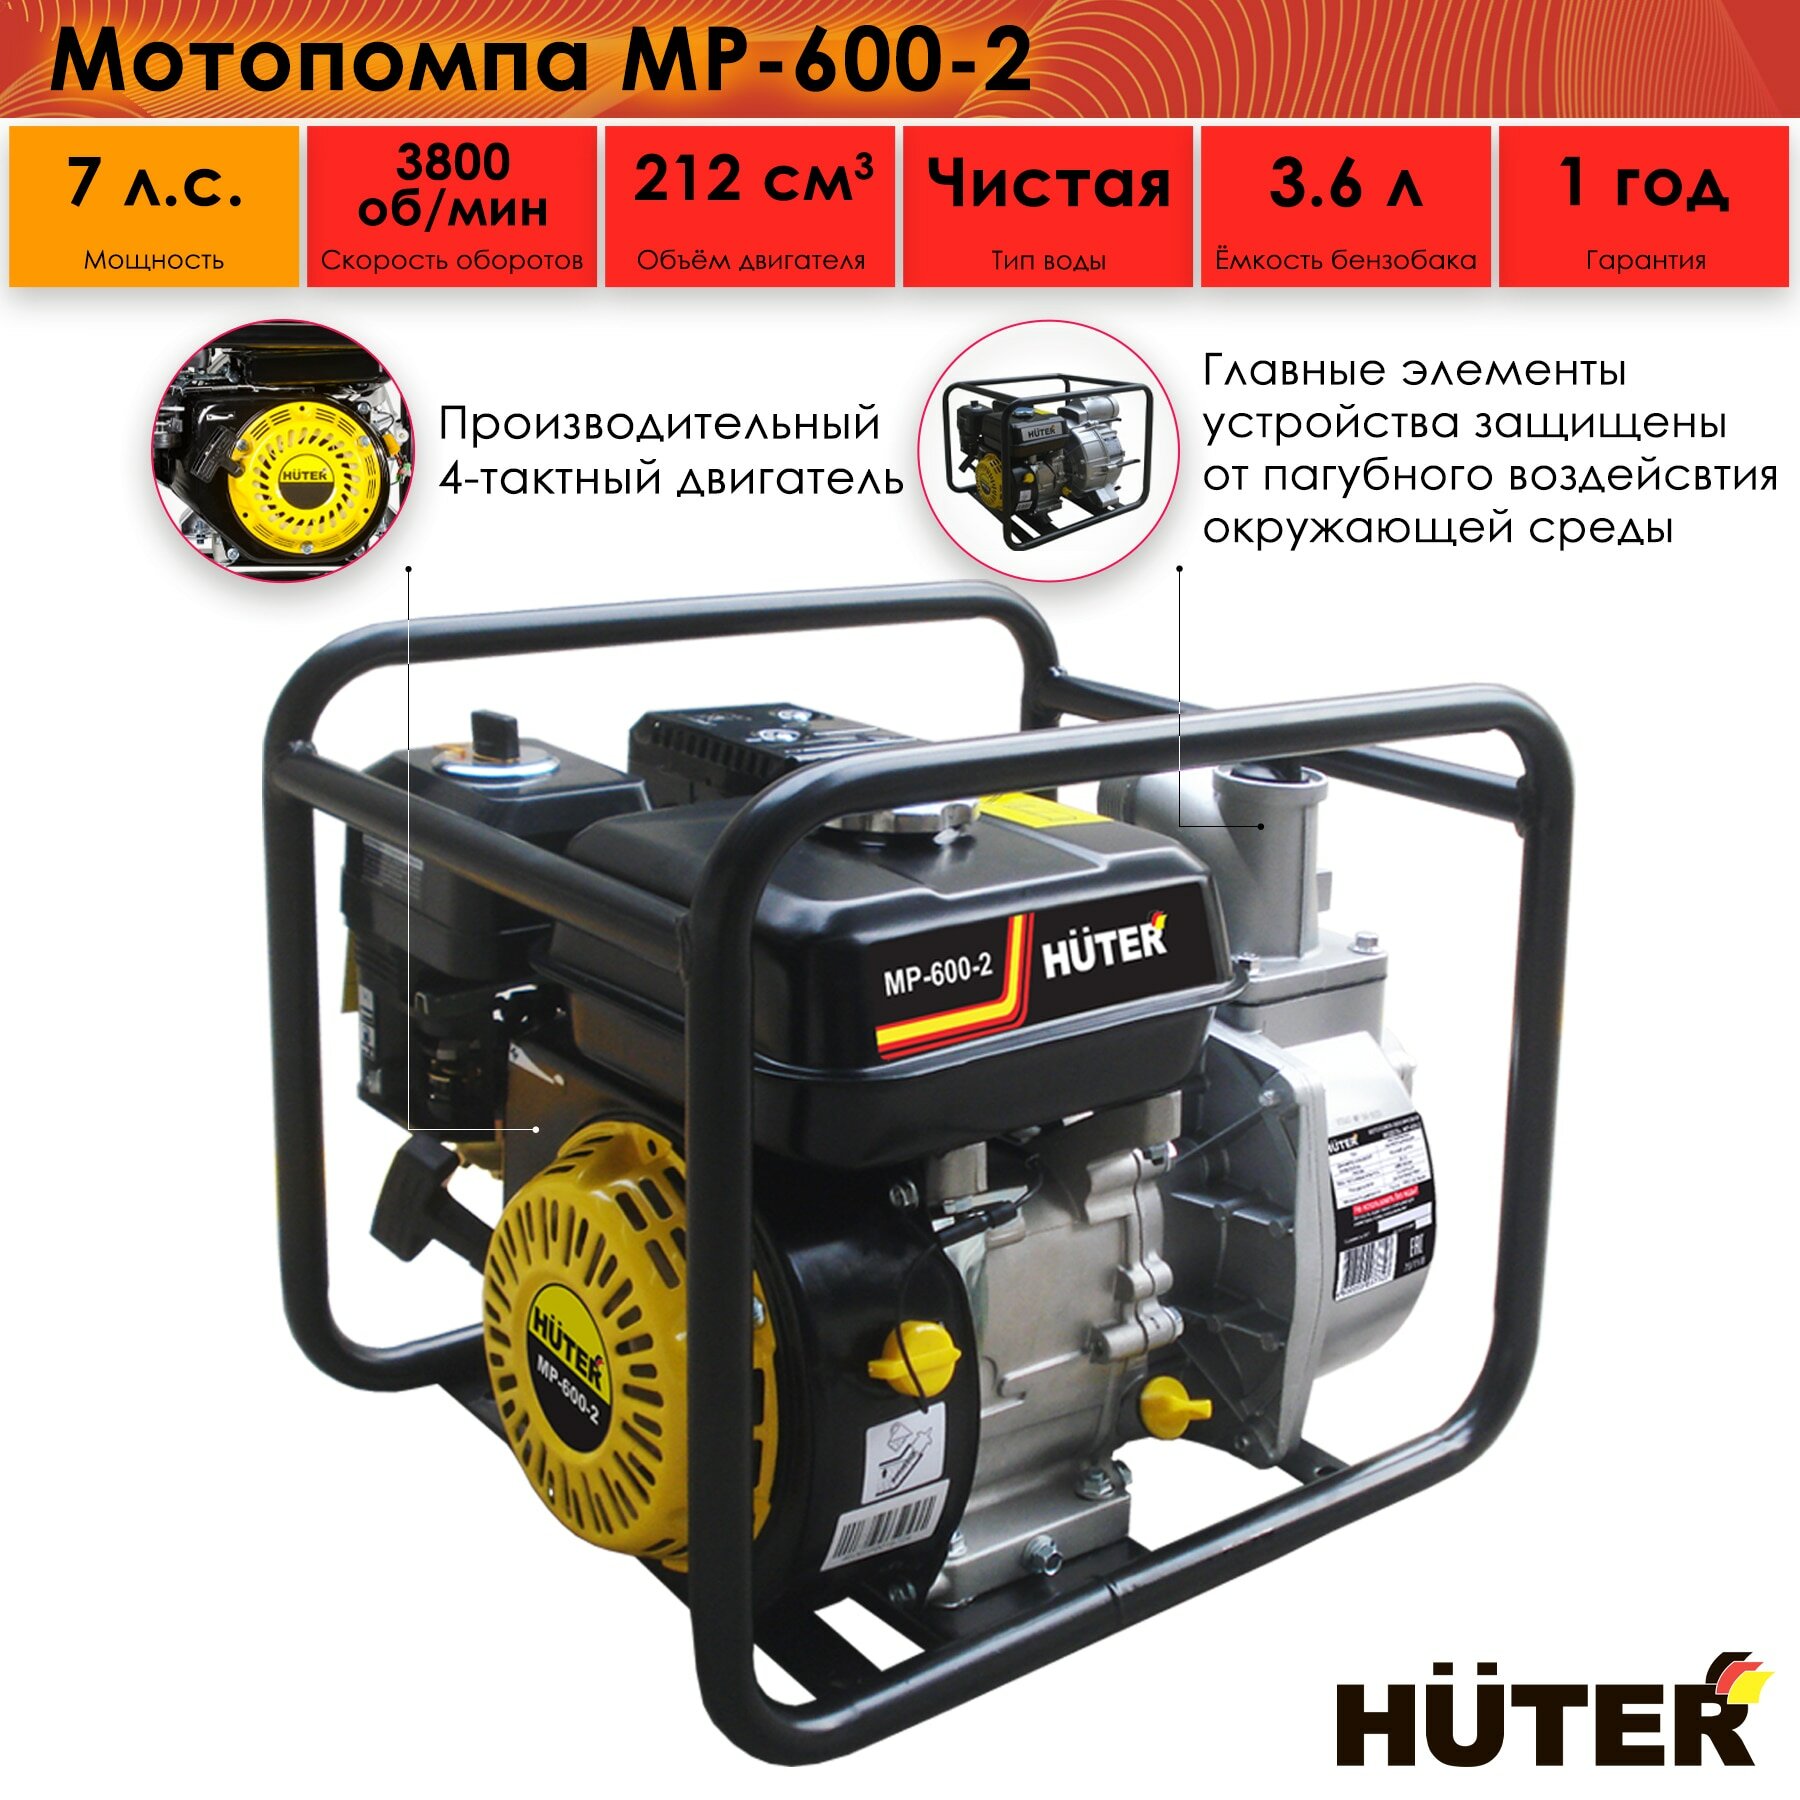 Мотопомпа Huter MP-600-2, 70/11/8, центробежная, самовсасывающая